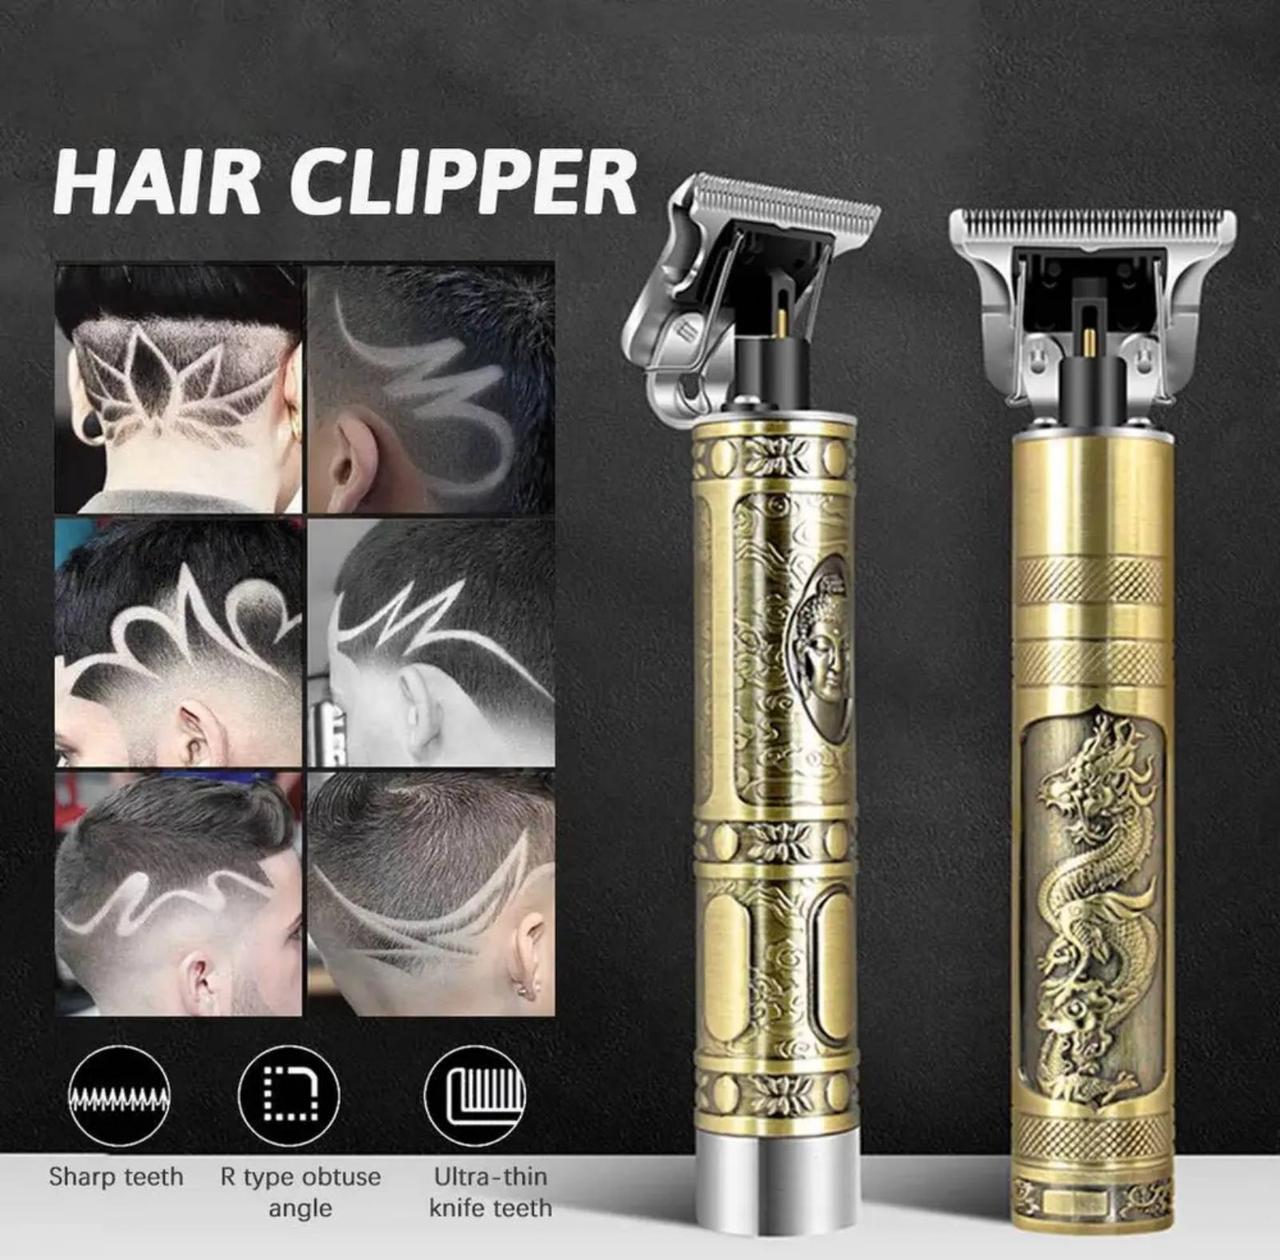 Аккумуляторна машинка для стрижки WS Hair Clipper JX 189 триммер для бороди вусів стрижки волосся V(A)